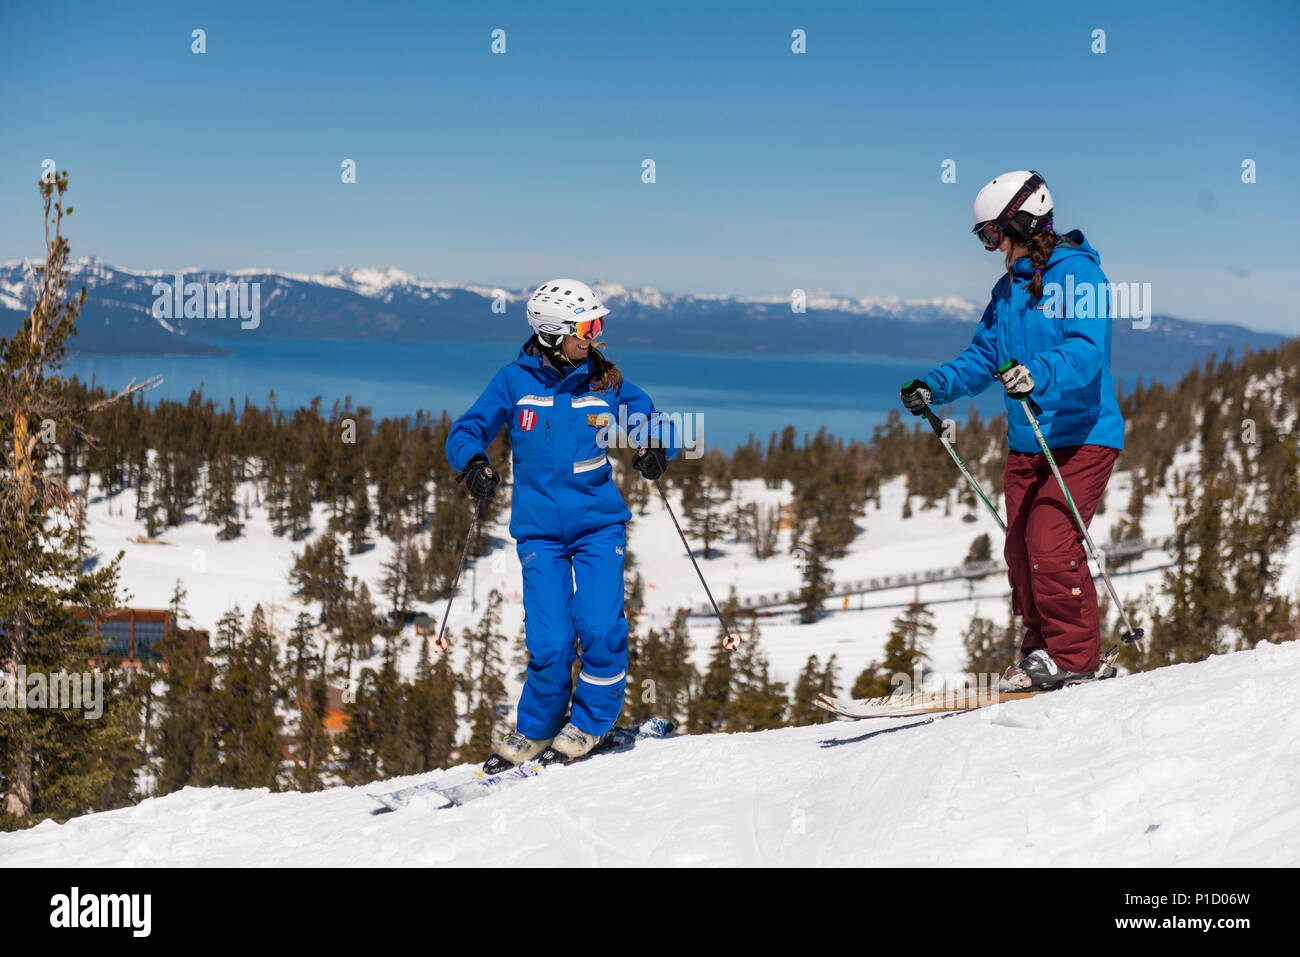 Heavenly Ski istruttore lavora con uno studente durante una lezione per principianti a valle celeste Area sciistica con il lago Tahoe in background. Foto Stock